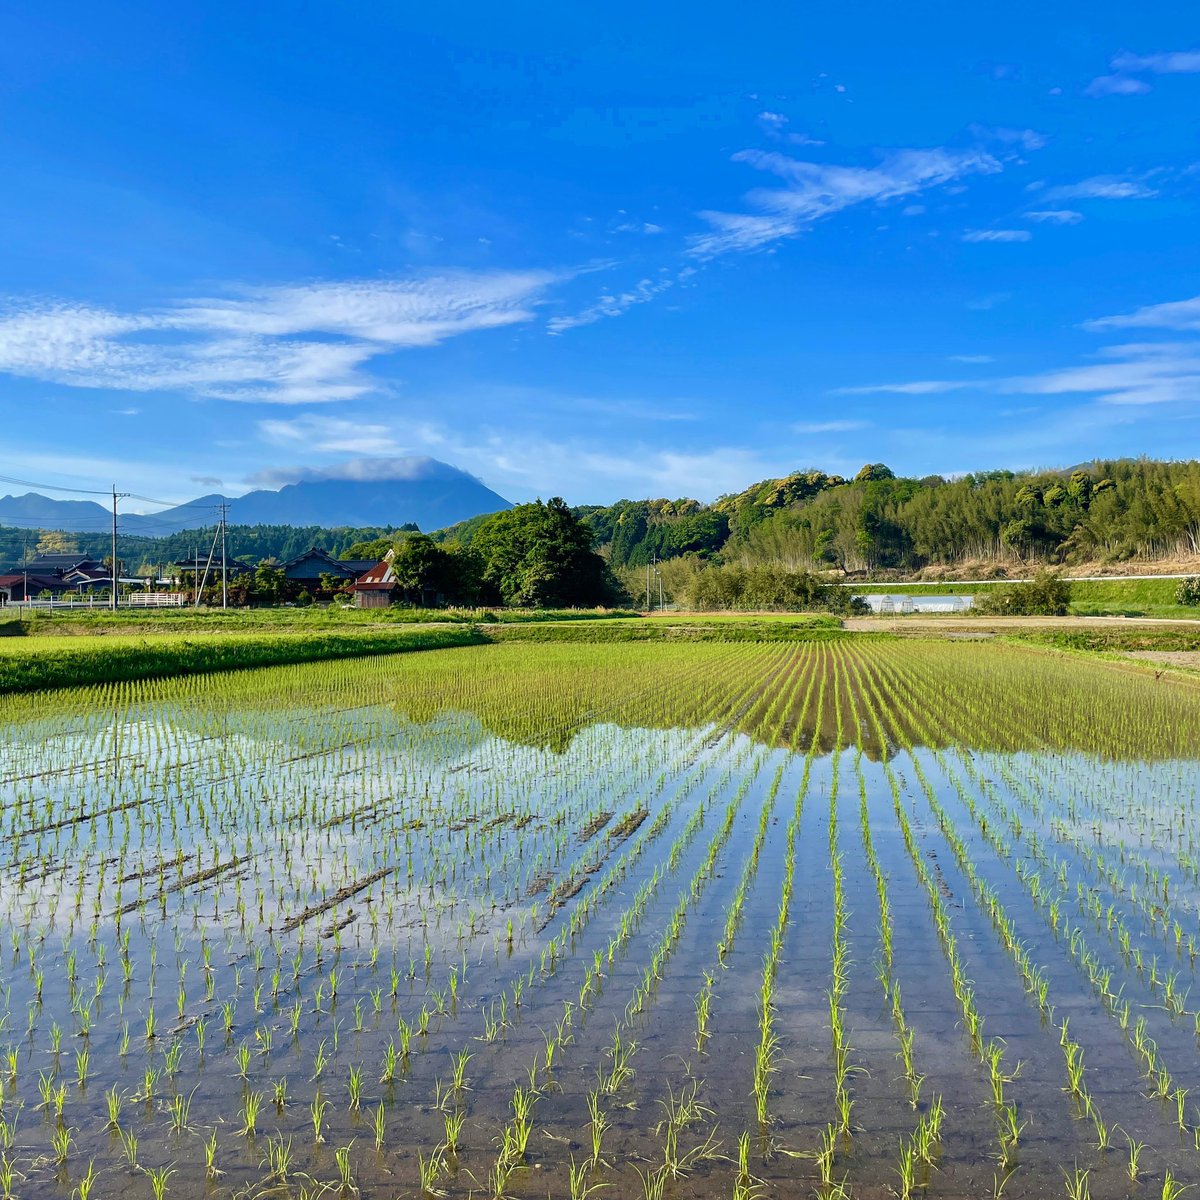 鳥取県大山町の「田んぼの入水」がワンだふる…🐾

朝の田んぼ。今の時期は続々と集落に広がる田んぼに水が注がれはじめるわん。入水を祝って毎晩夜にはカエルの大合唱。太陽の光を浴びた朝の田んぼはキラキラしてるわん。大山から注がれた豊富な水で美味しいお米になりますわん。
#芝犬旅行記